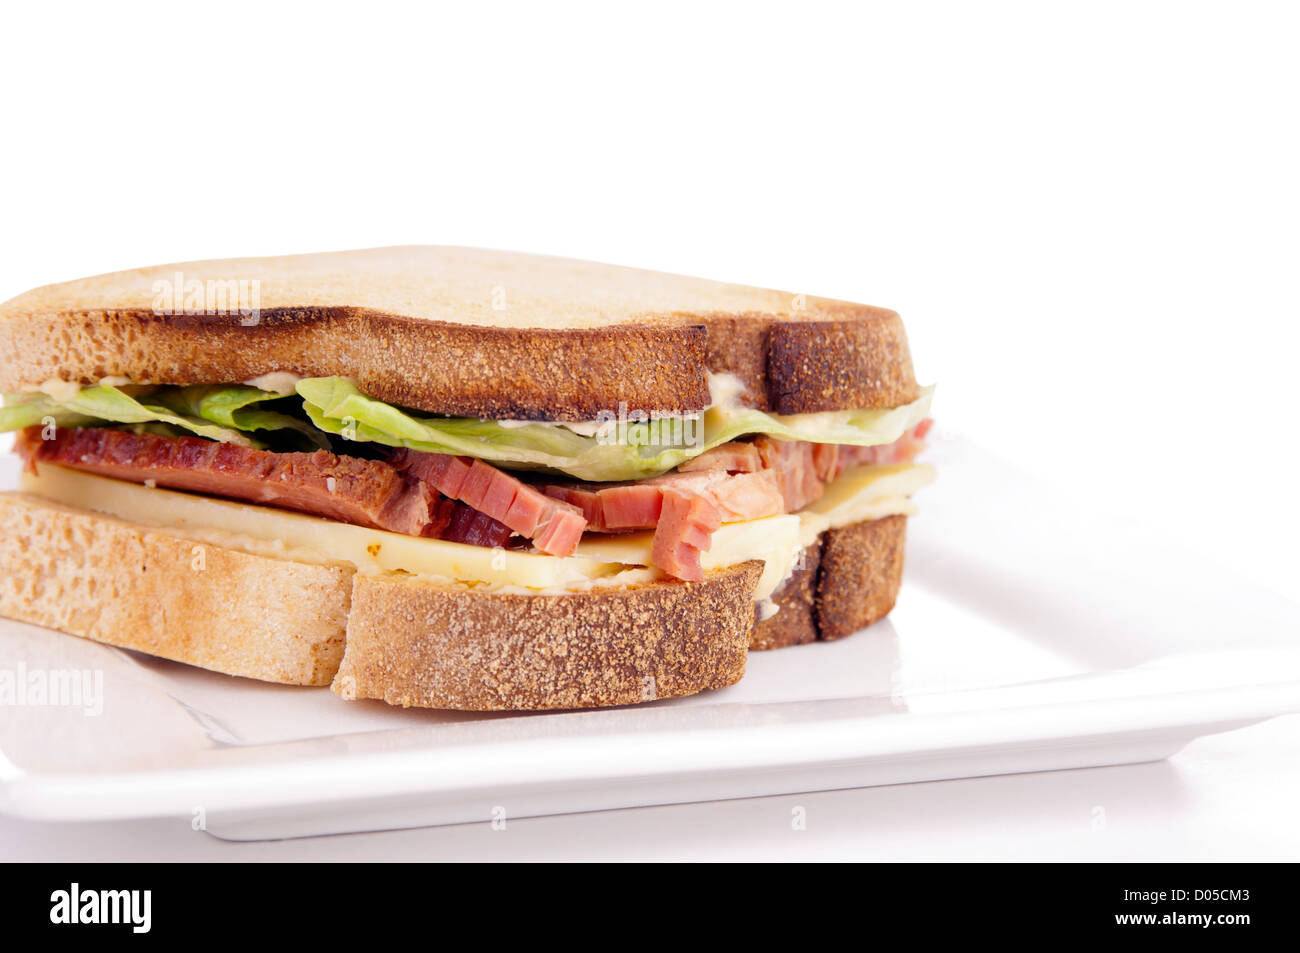 Gluten freie Sandwich mit hausgemachtem Brot, Käse, Roastbeef und Salat Stockfoto